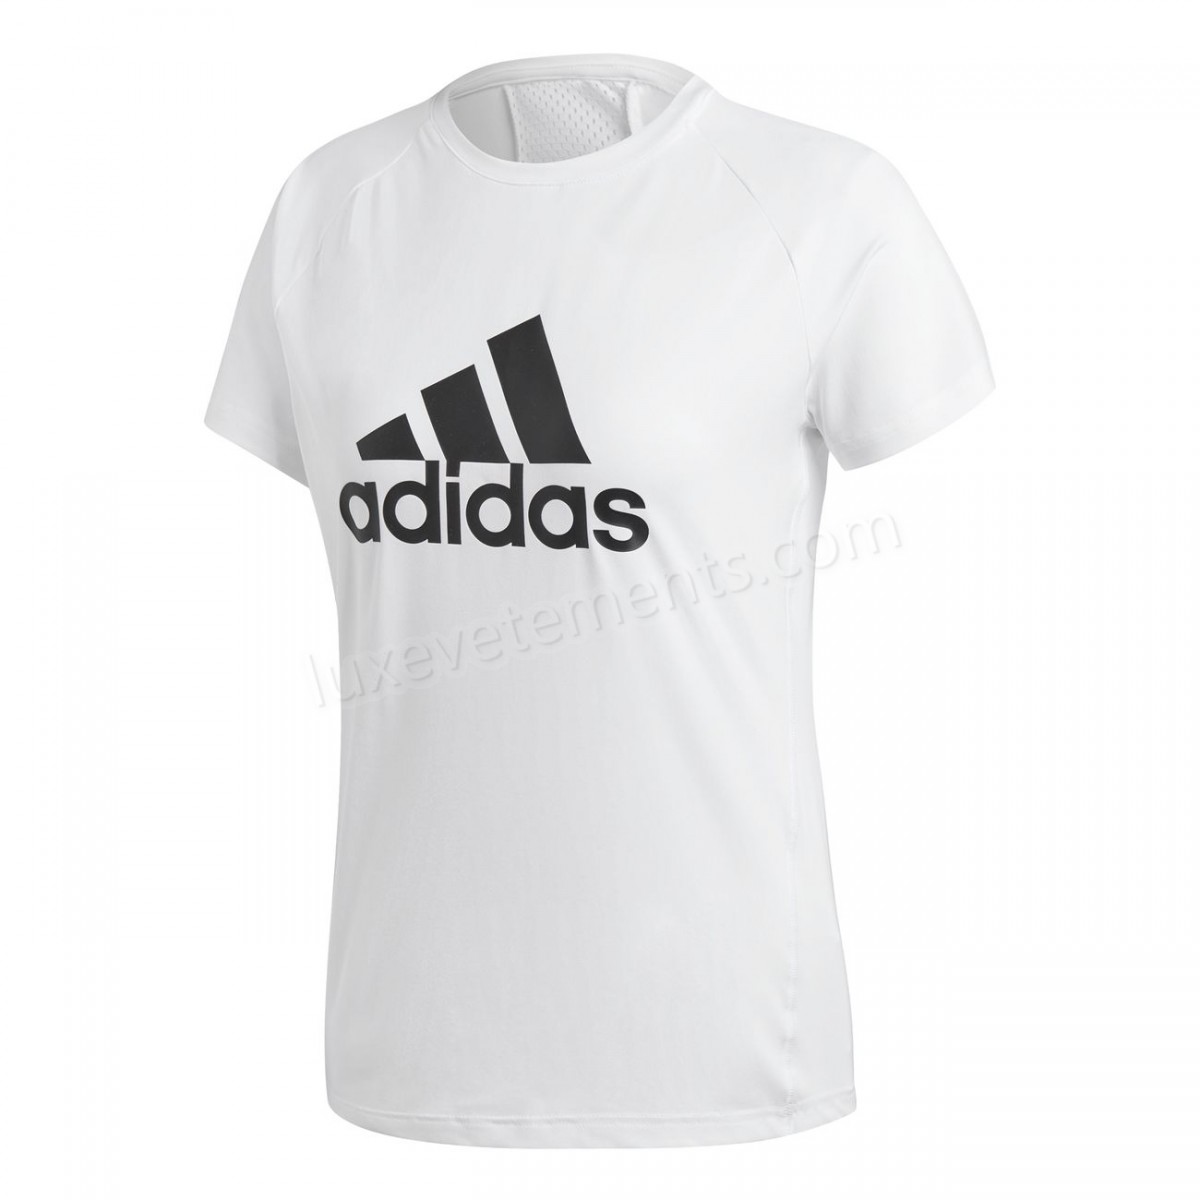 Adidas-Fitness femme ADIDAS Adidas Design 2 Move Logo Vente en ligne - -2